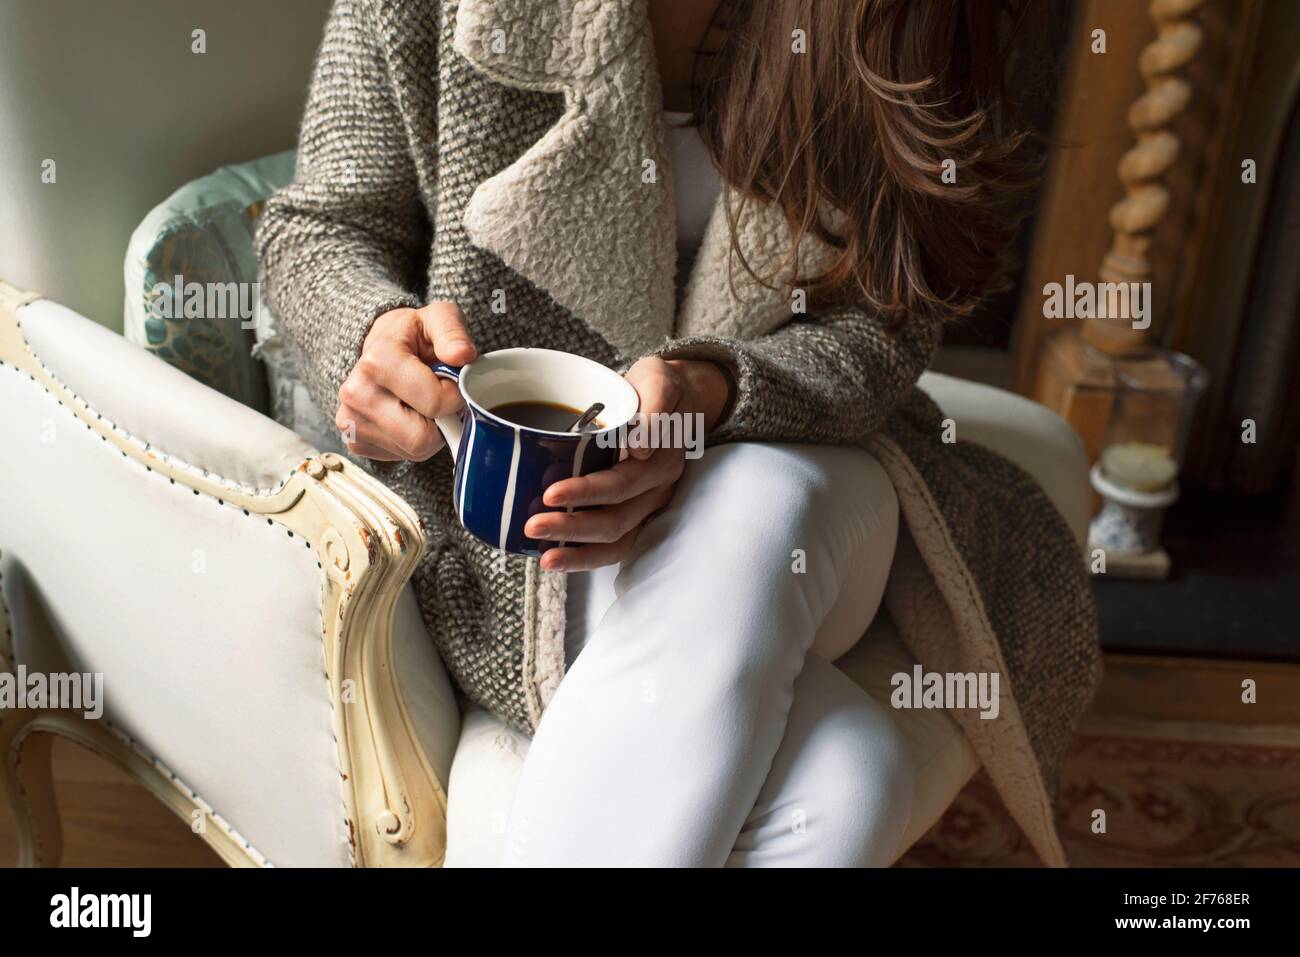 Primer plano de una mujer con ropa de punto cálida sentada en un sillón de cuero con una taza de café. Estilo de vida de ocio interior con estilo rústico. Londres, Reino Unido Foto de stock